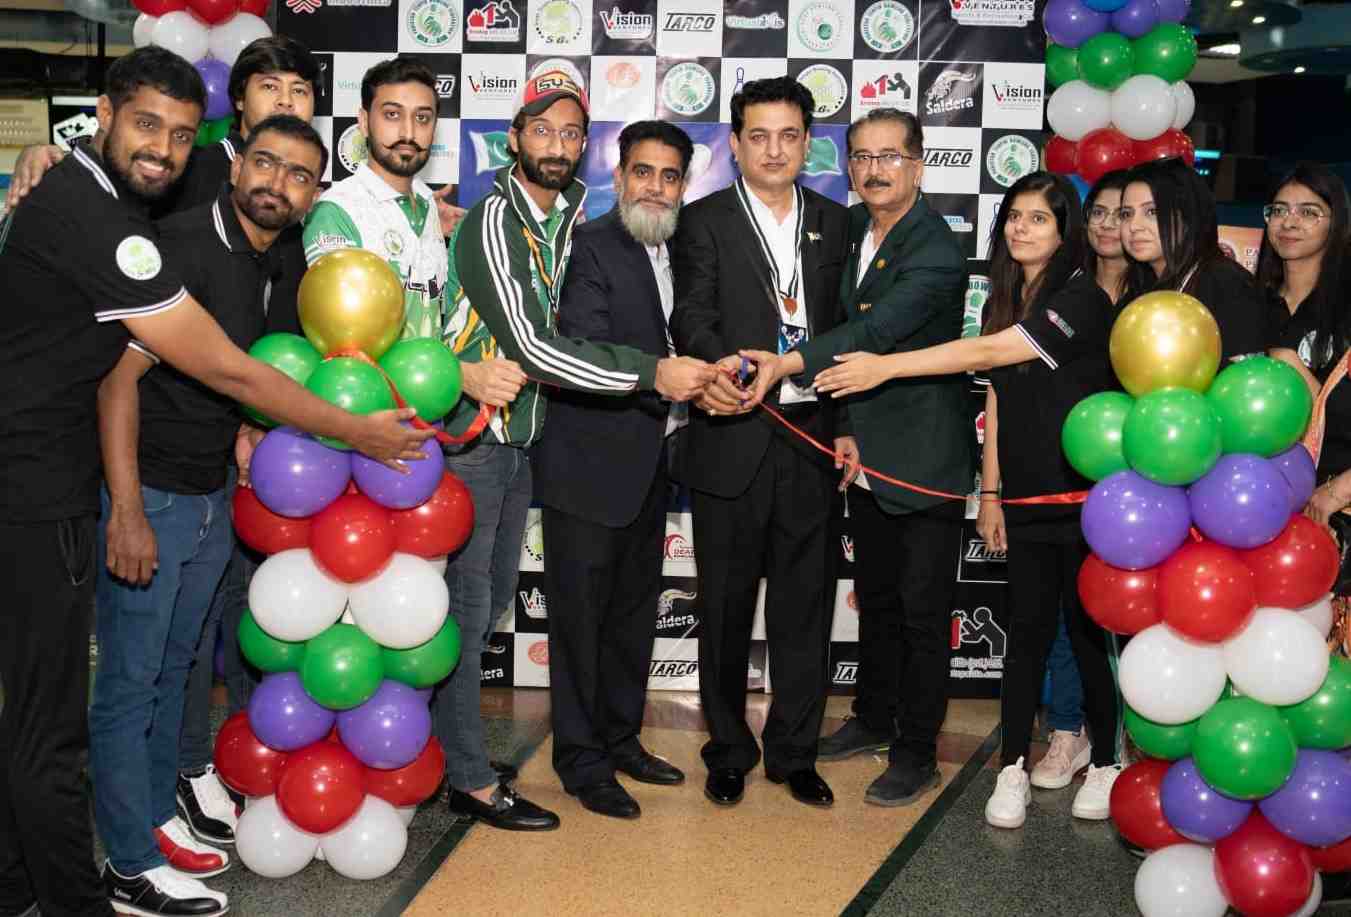 Pakistan Open Tenpin Bowling Championship starts in Karachi